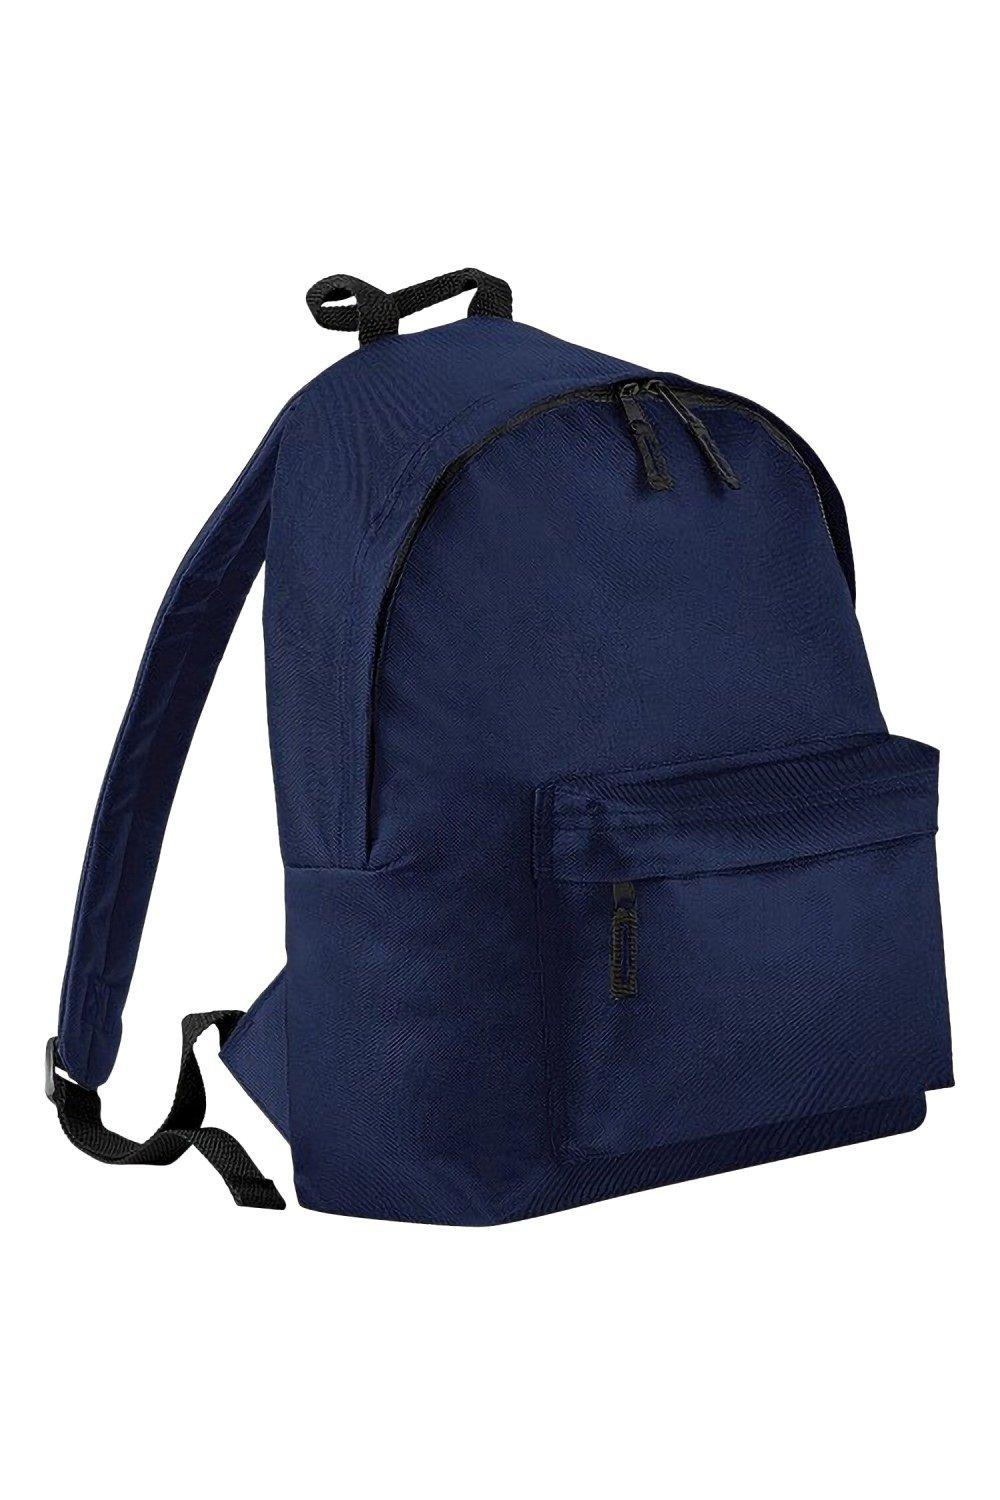 Модный рюкзак / рюкзак (14 литров) (2 шт. в упаковке) Bagbase, темно-синий